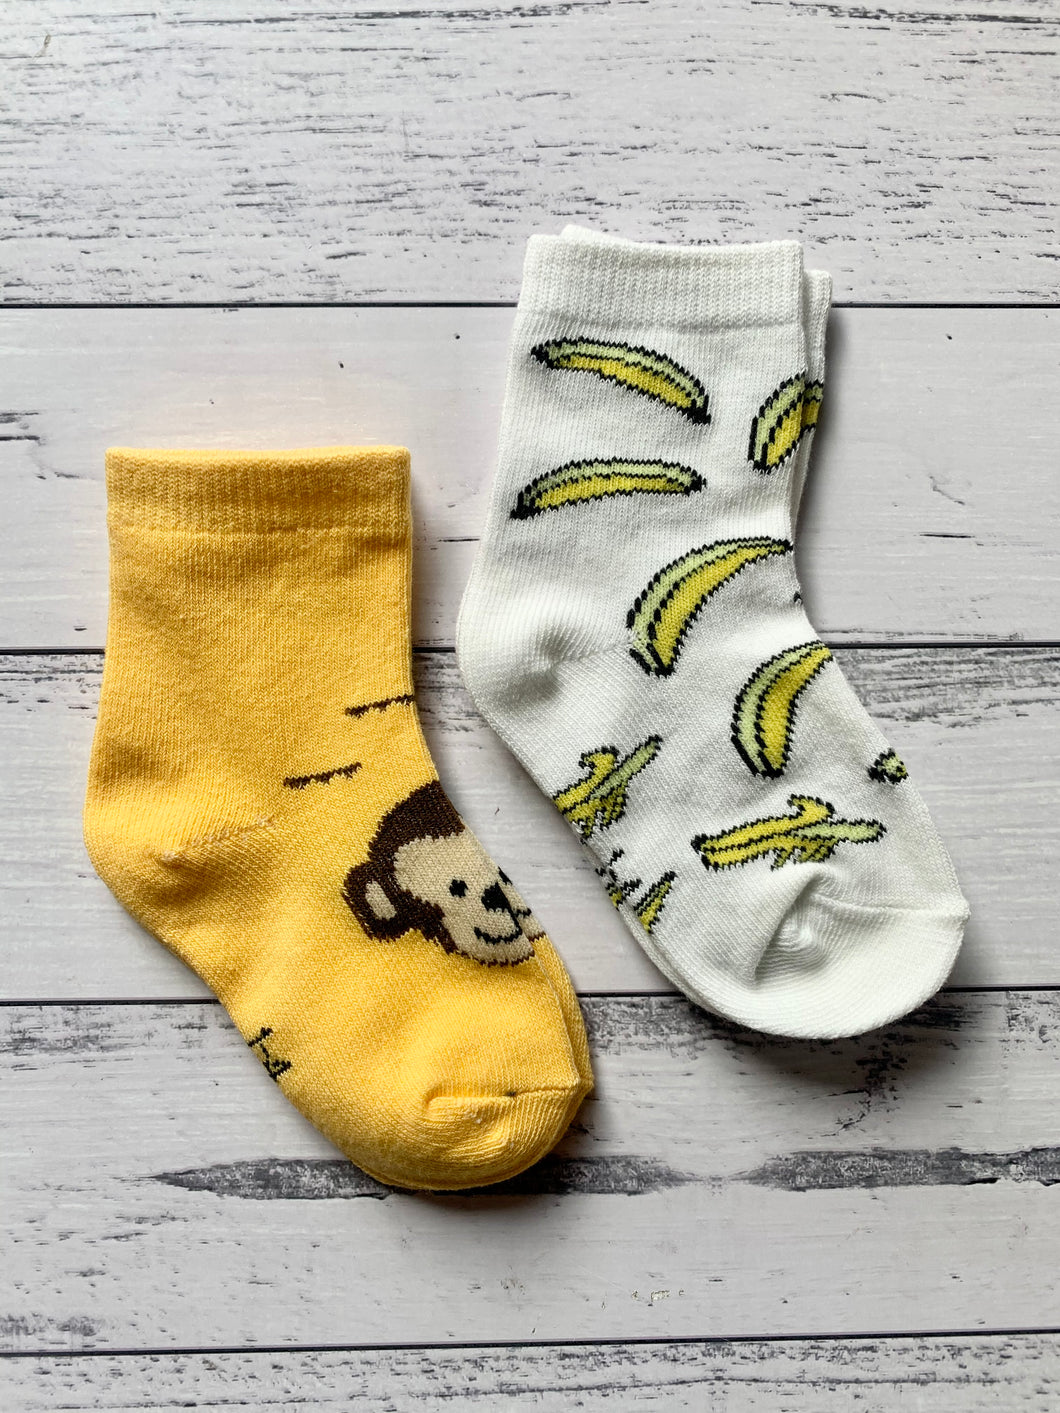 Little Monkey Socks!